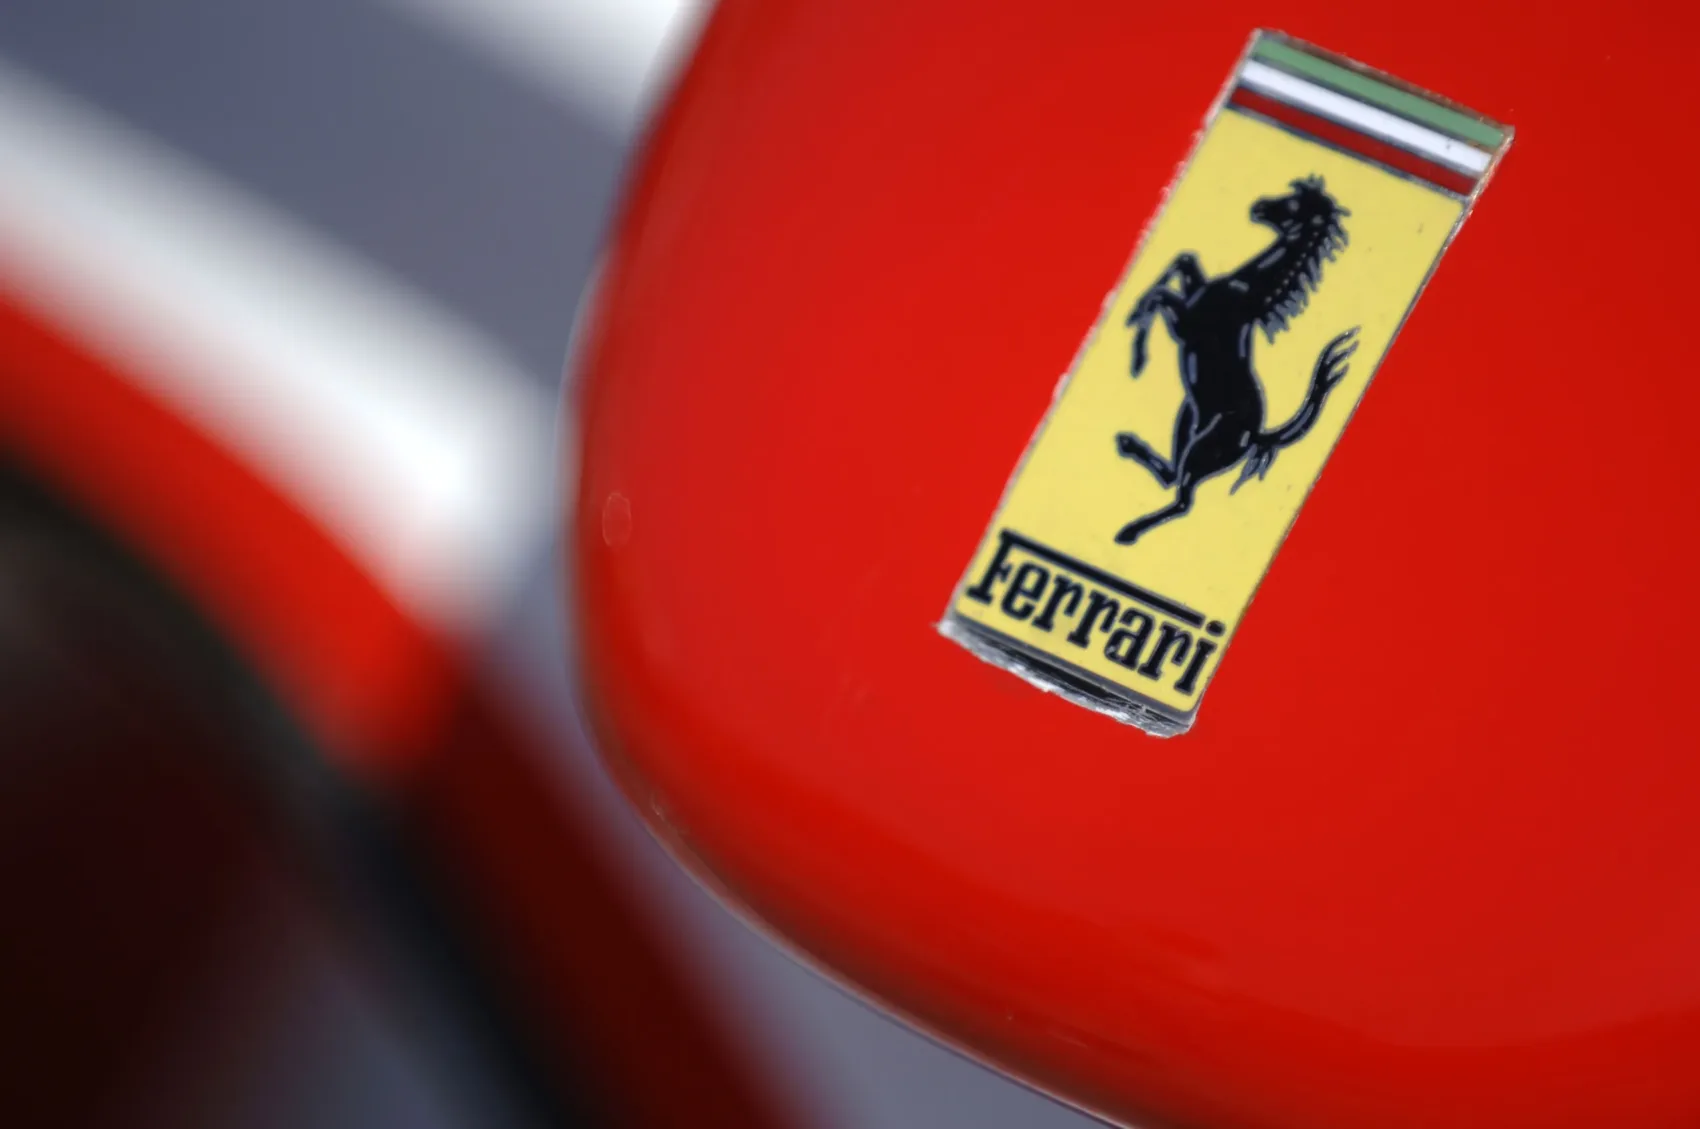 A Ferrari elektromos autója új szintre emelkedik: indulás a világbajnokságon